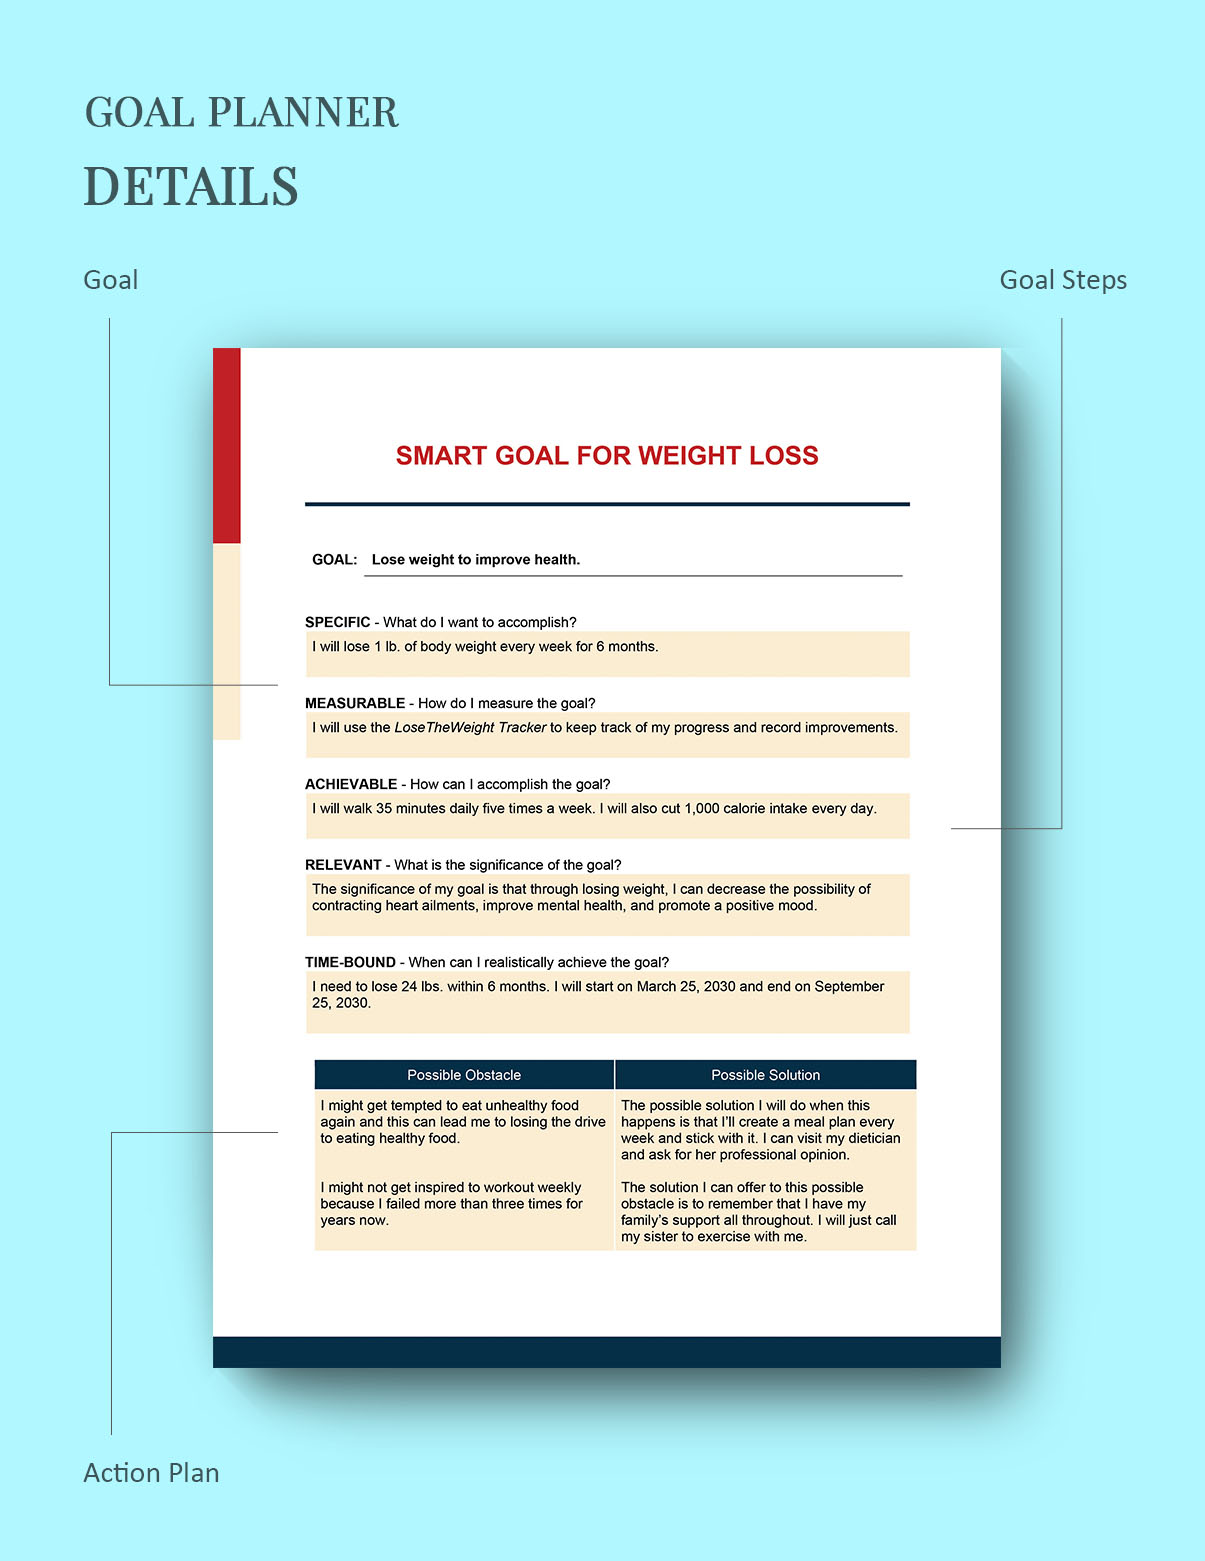 https://images.template.net/74691/Smart-Goals-for-Weight-Loss-Template-editable-1.jpg